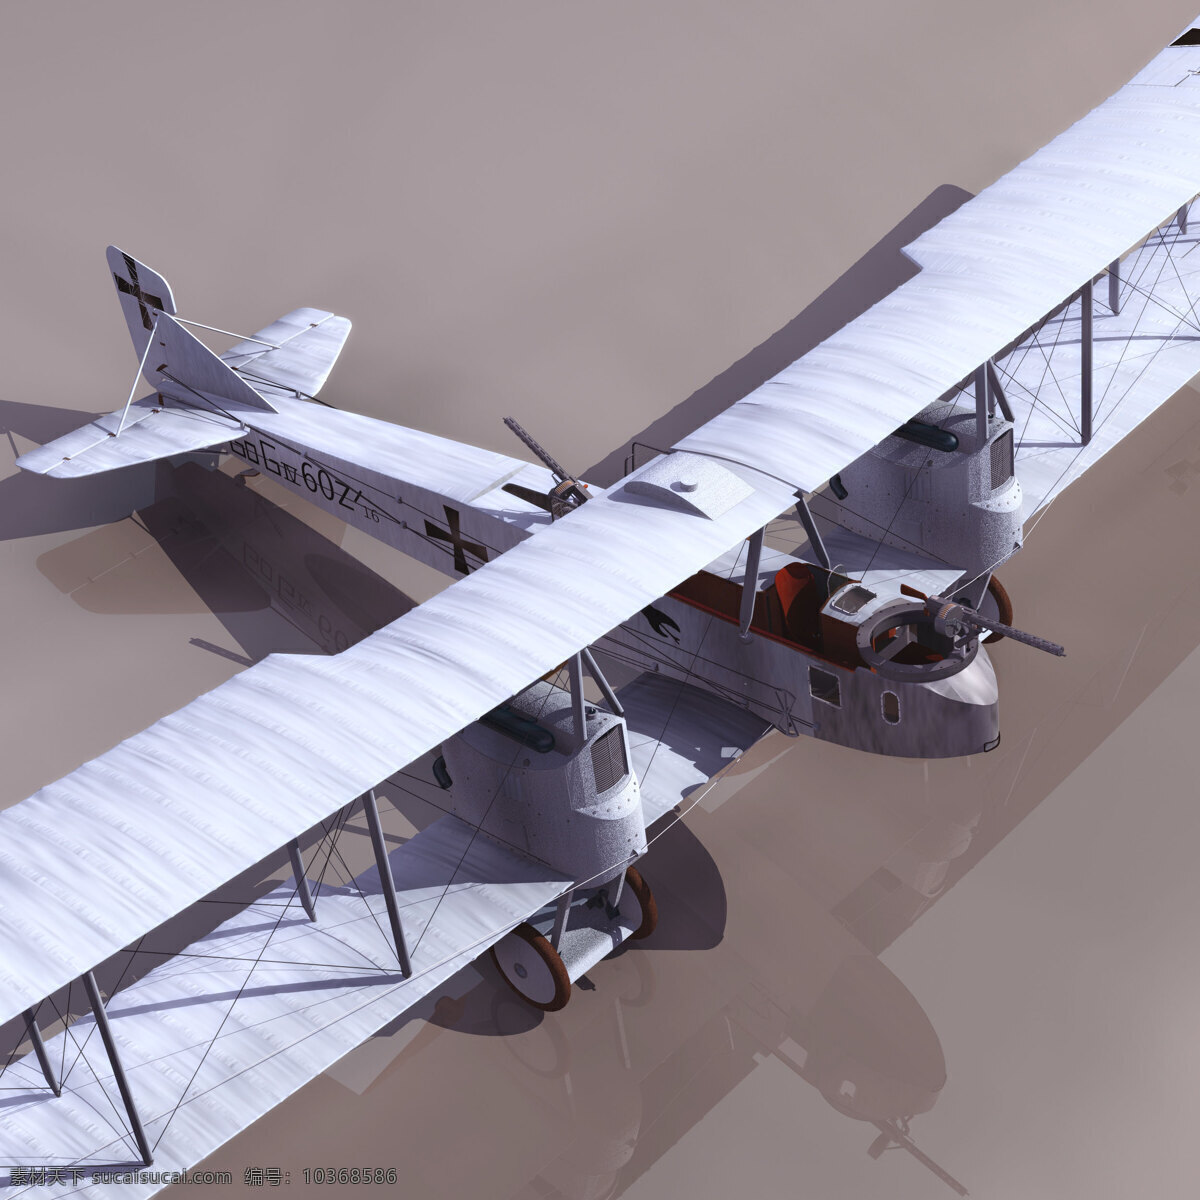 3d飞机模型 3d设计模型 max 飞机 飞机模型 源文件 3d 模板下载 机场设备模型 飞机场设备 机场设备 3d模型素材 其他3d模型